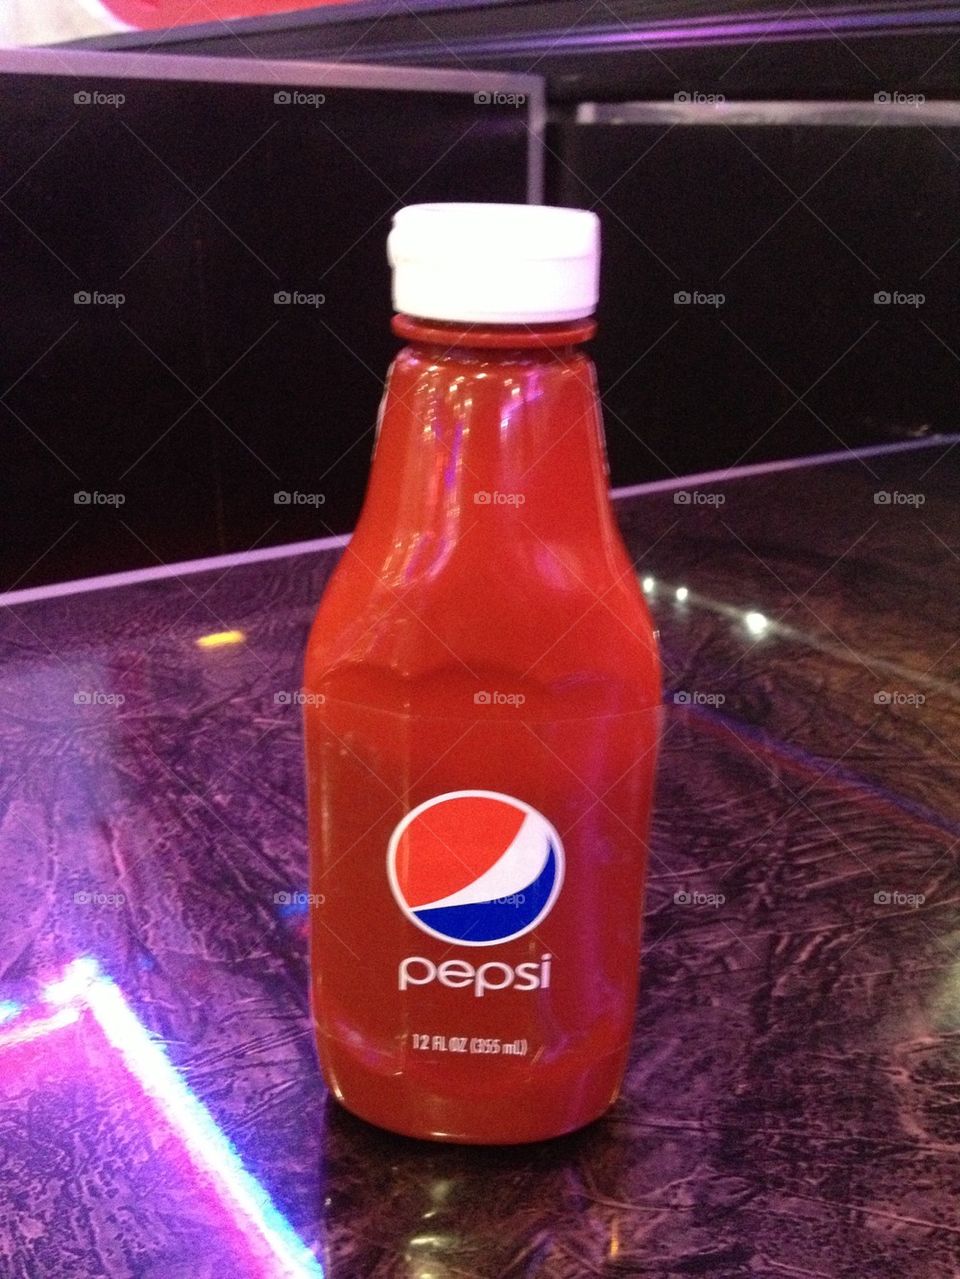 Pepsi Ketchup?